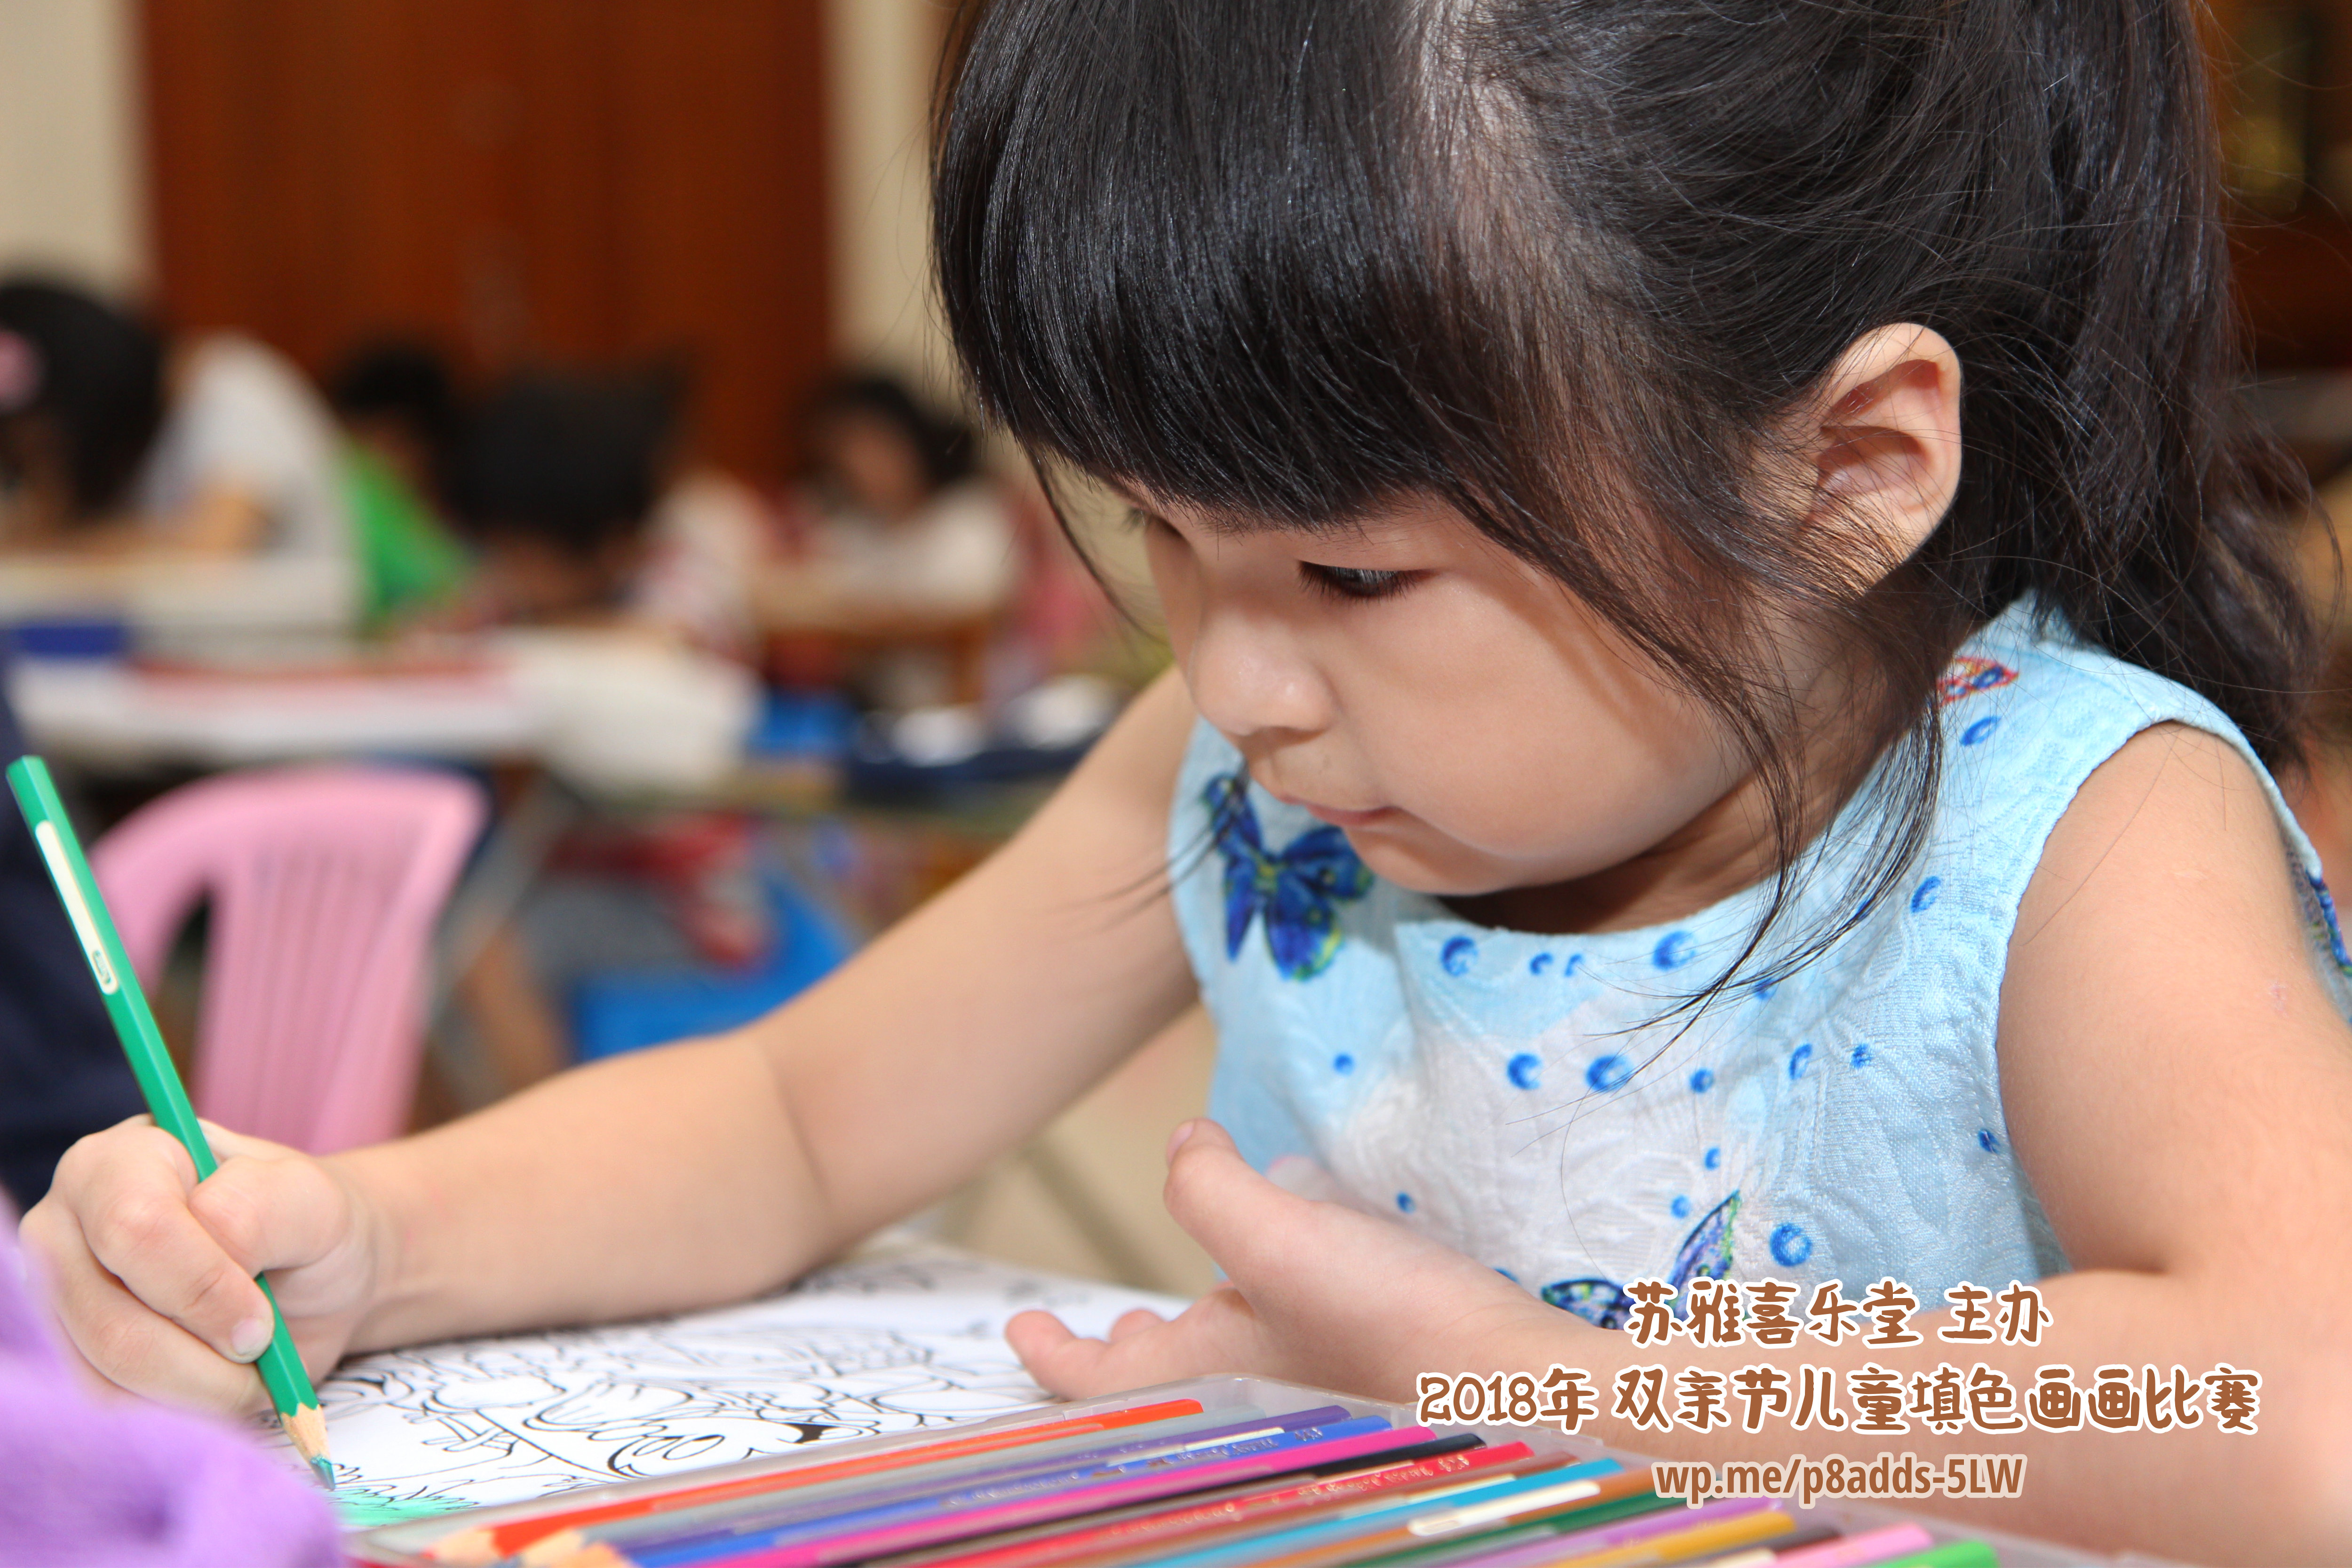 Batu Pahat Gereja Joy Soga Colouring Contest 苏雅喜乐堂主办2018年 峇株巴辖双亲节儿童填色画画比赛 培养儿童对彩色画画的兴趣 发掘美术的潜能 B1-11